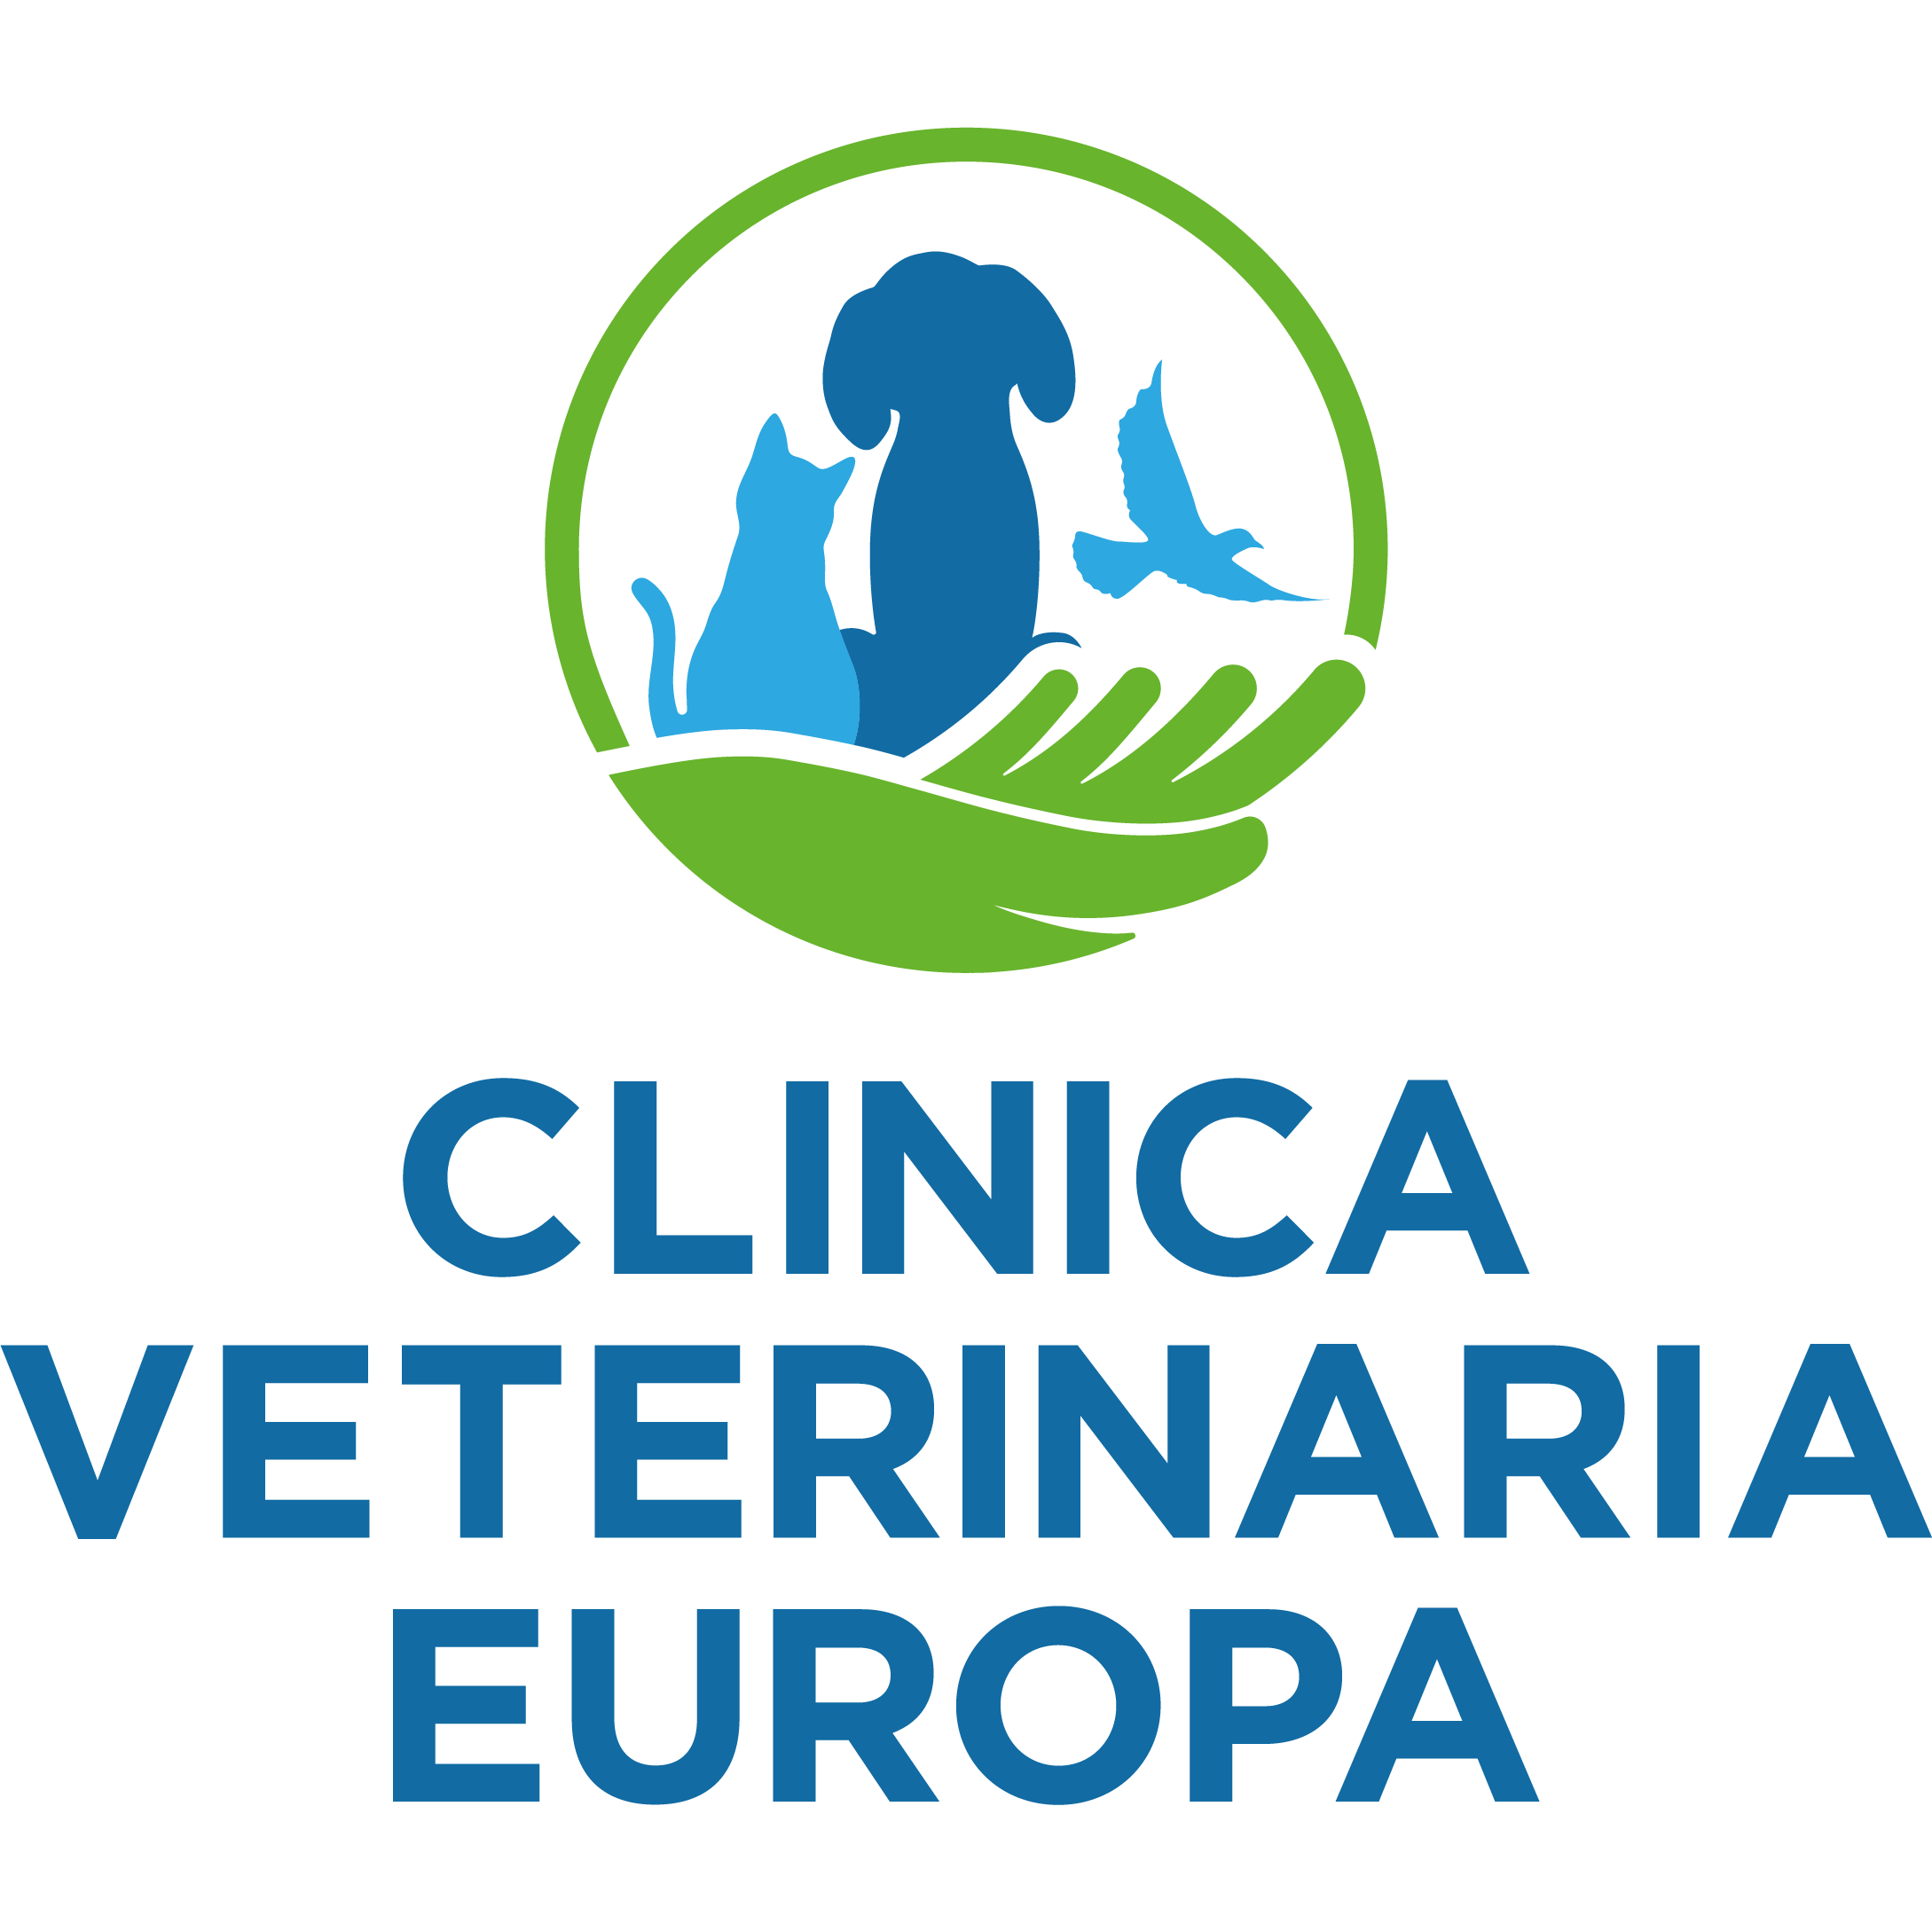 Clinica Veterinaria Europa - Veterinaria - ambulatori e laboratori Firenze